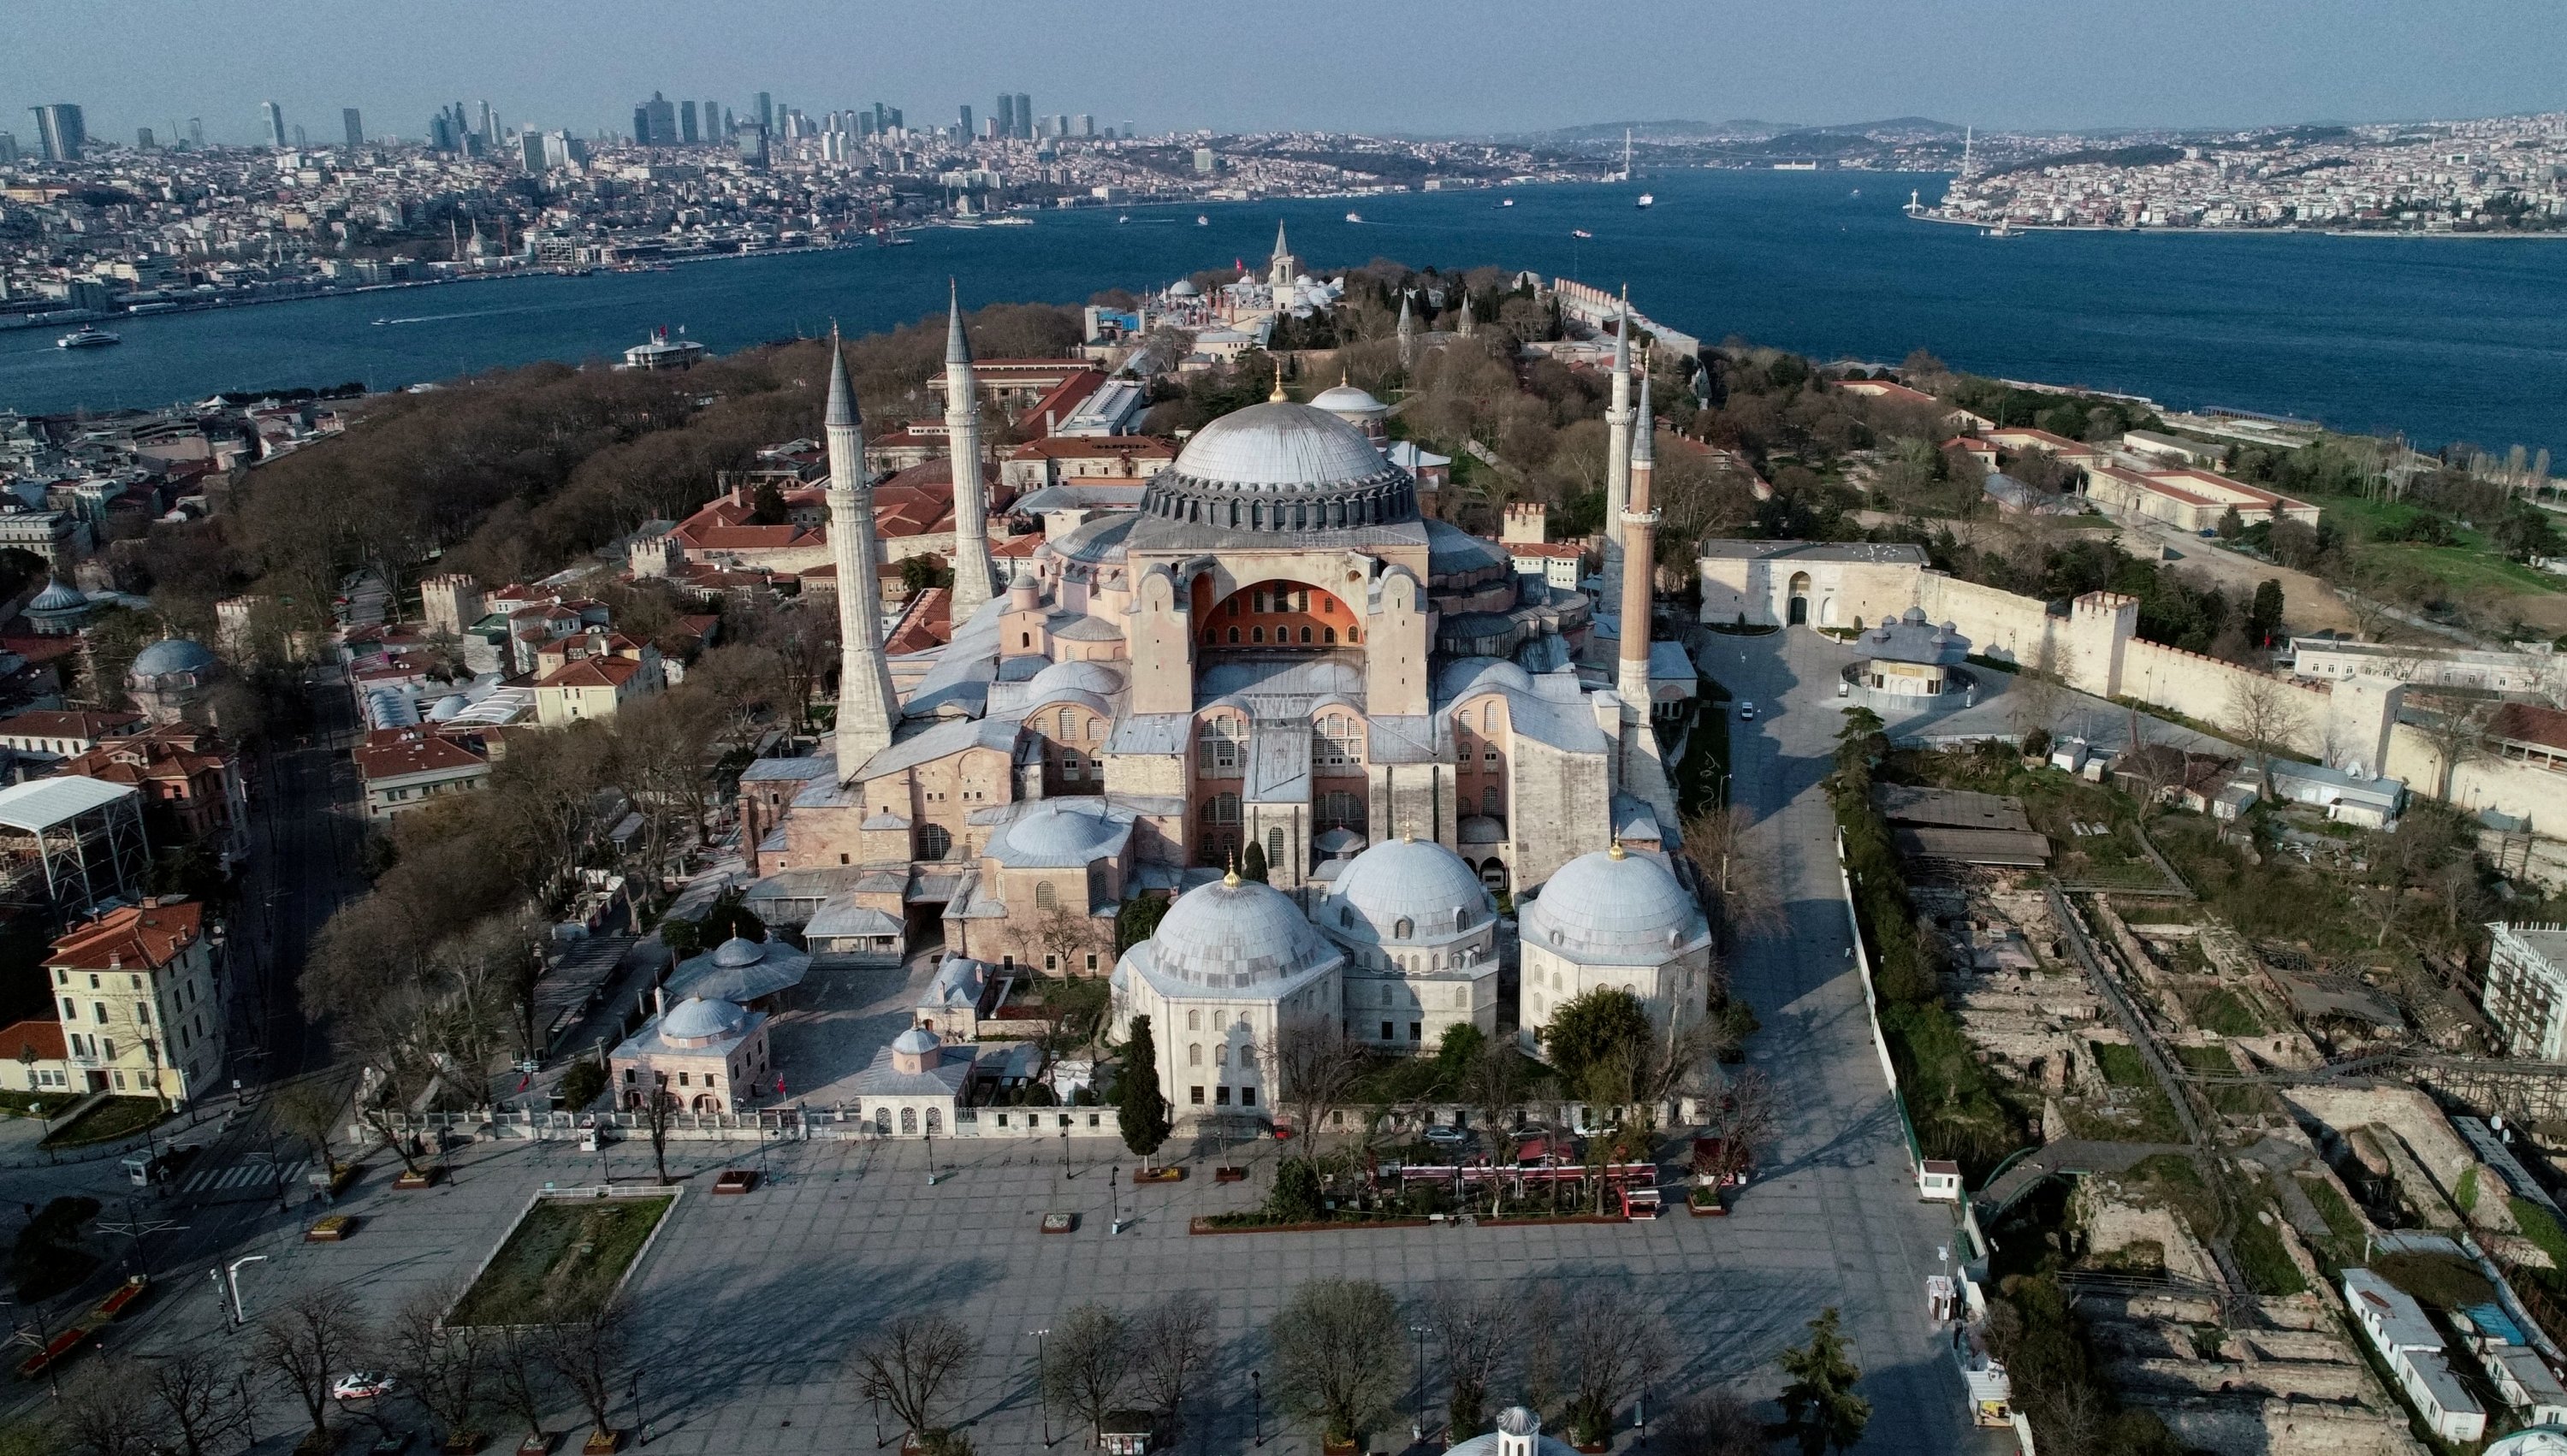 Hagia Sophia mosque and museum 